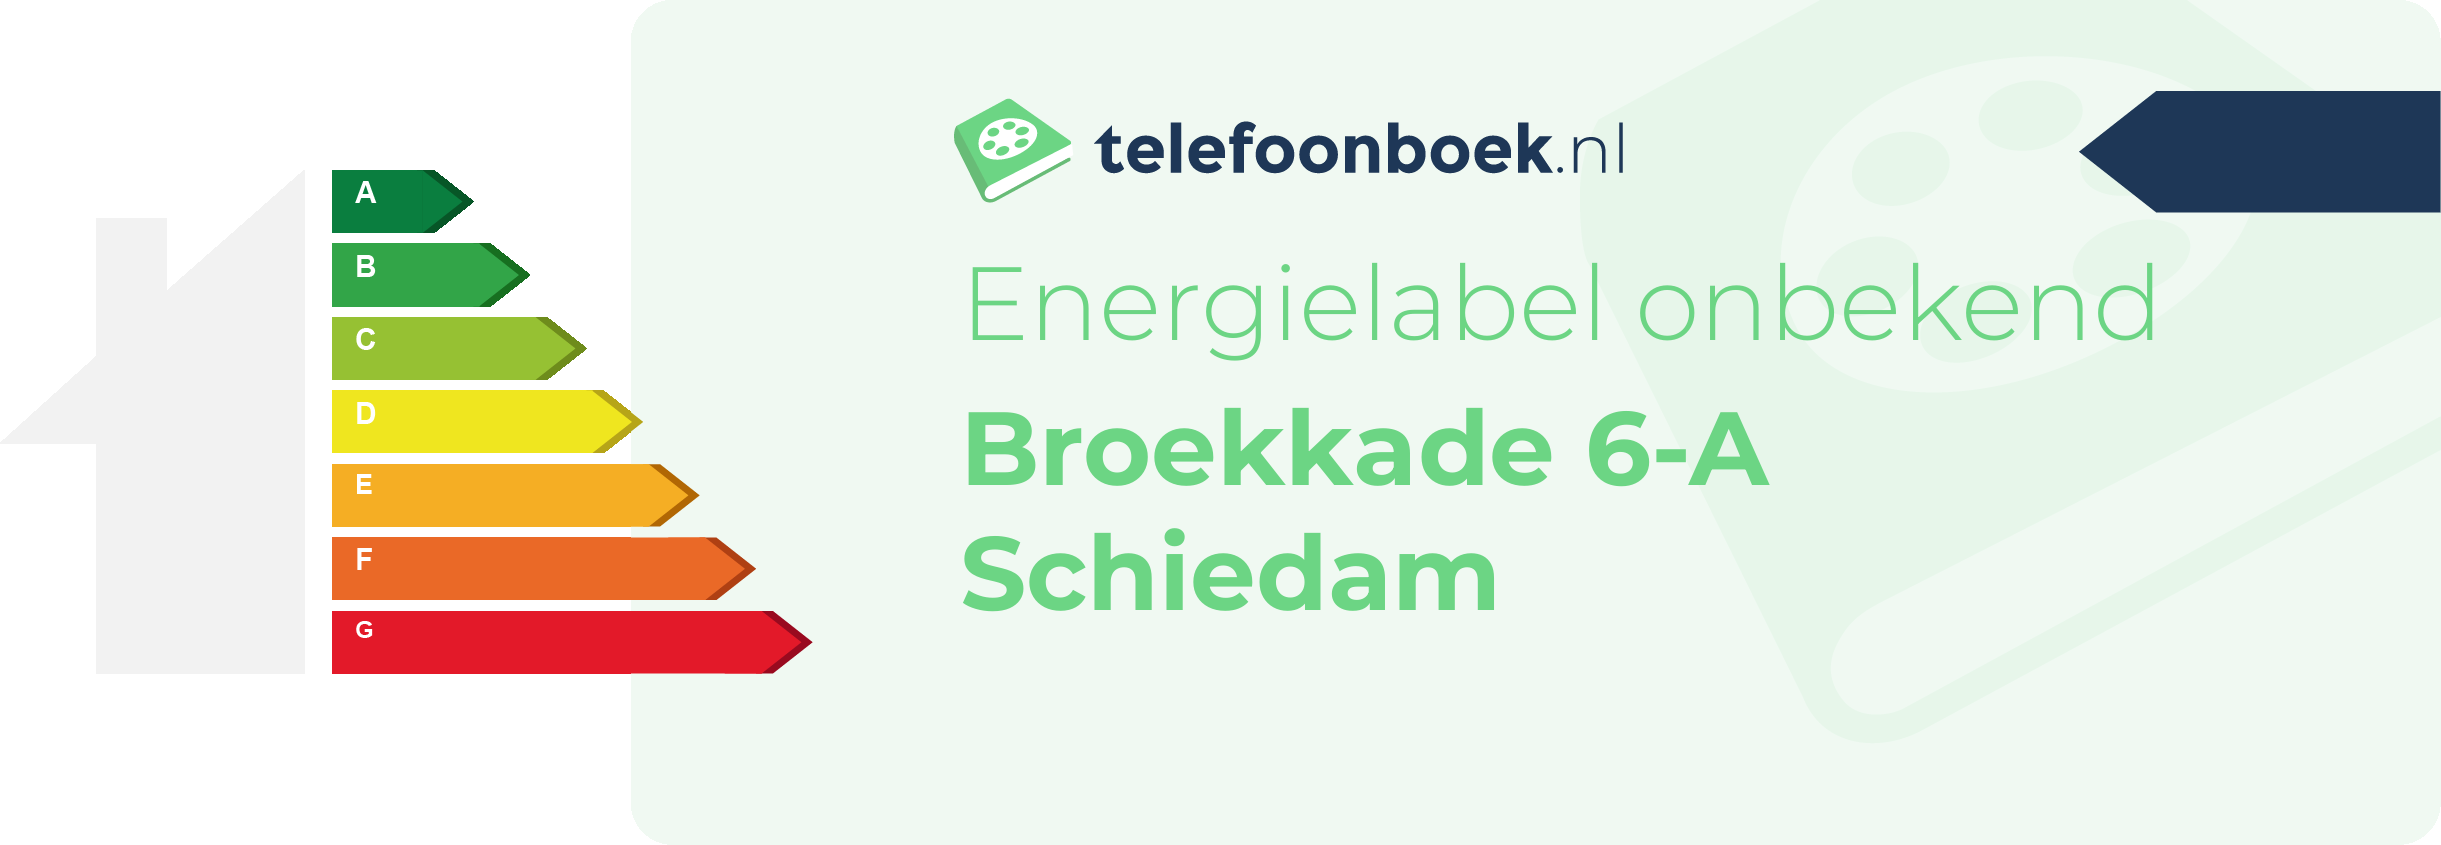 Energielabel Broekkade 6-A Schiedam